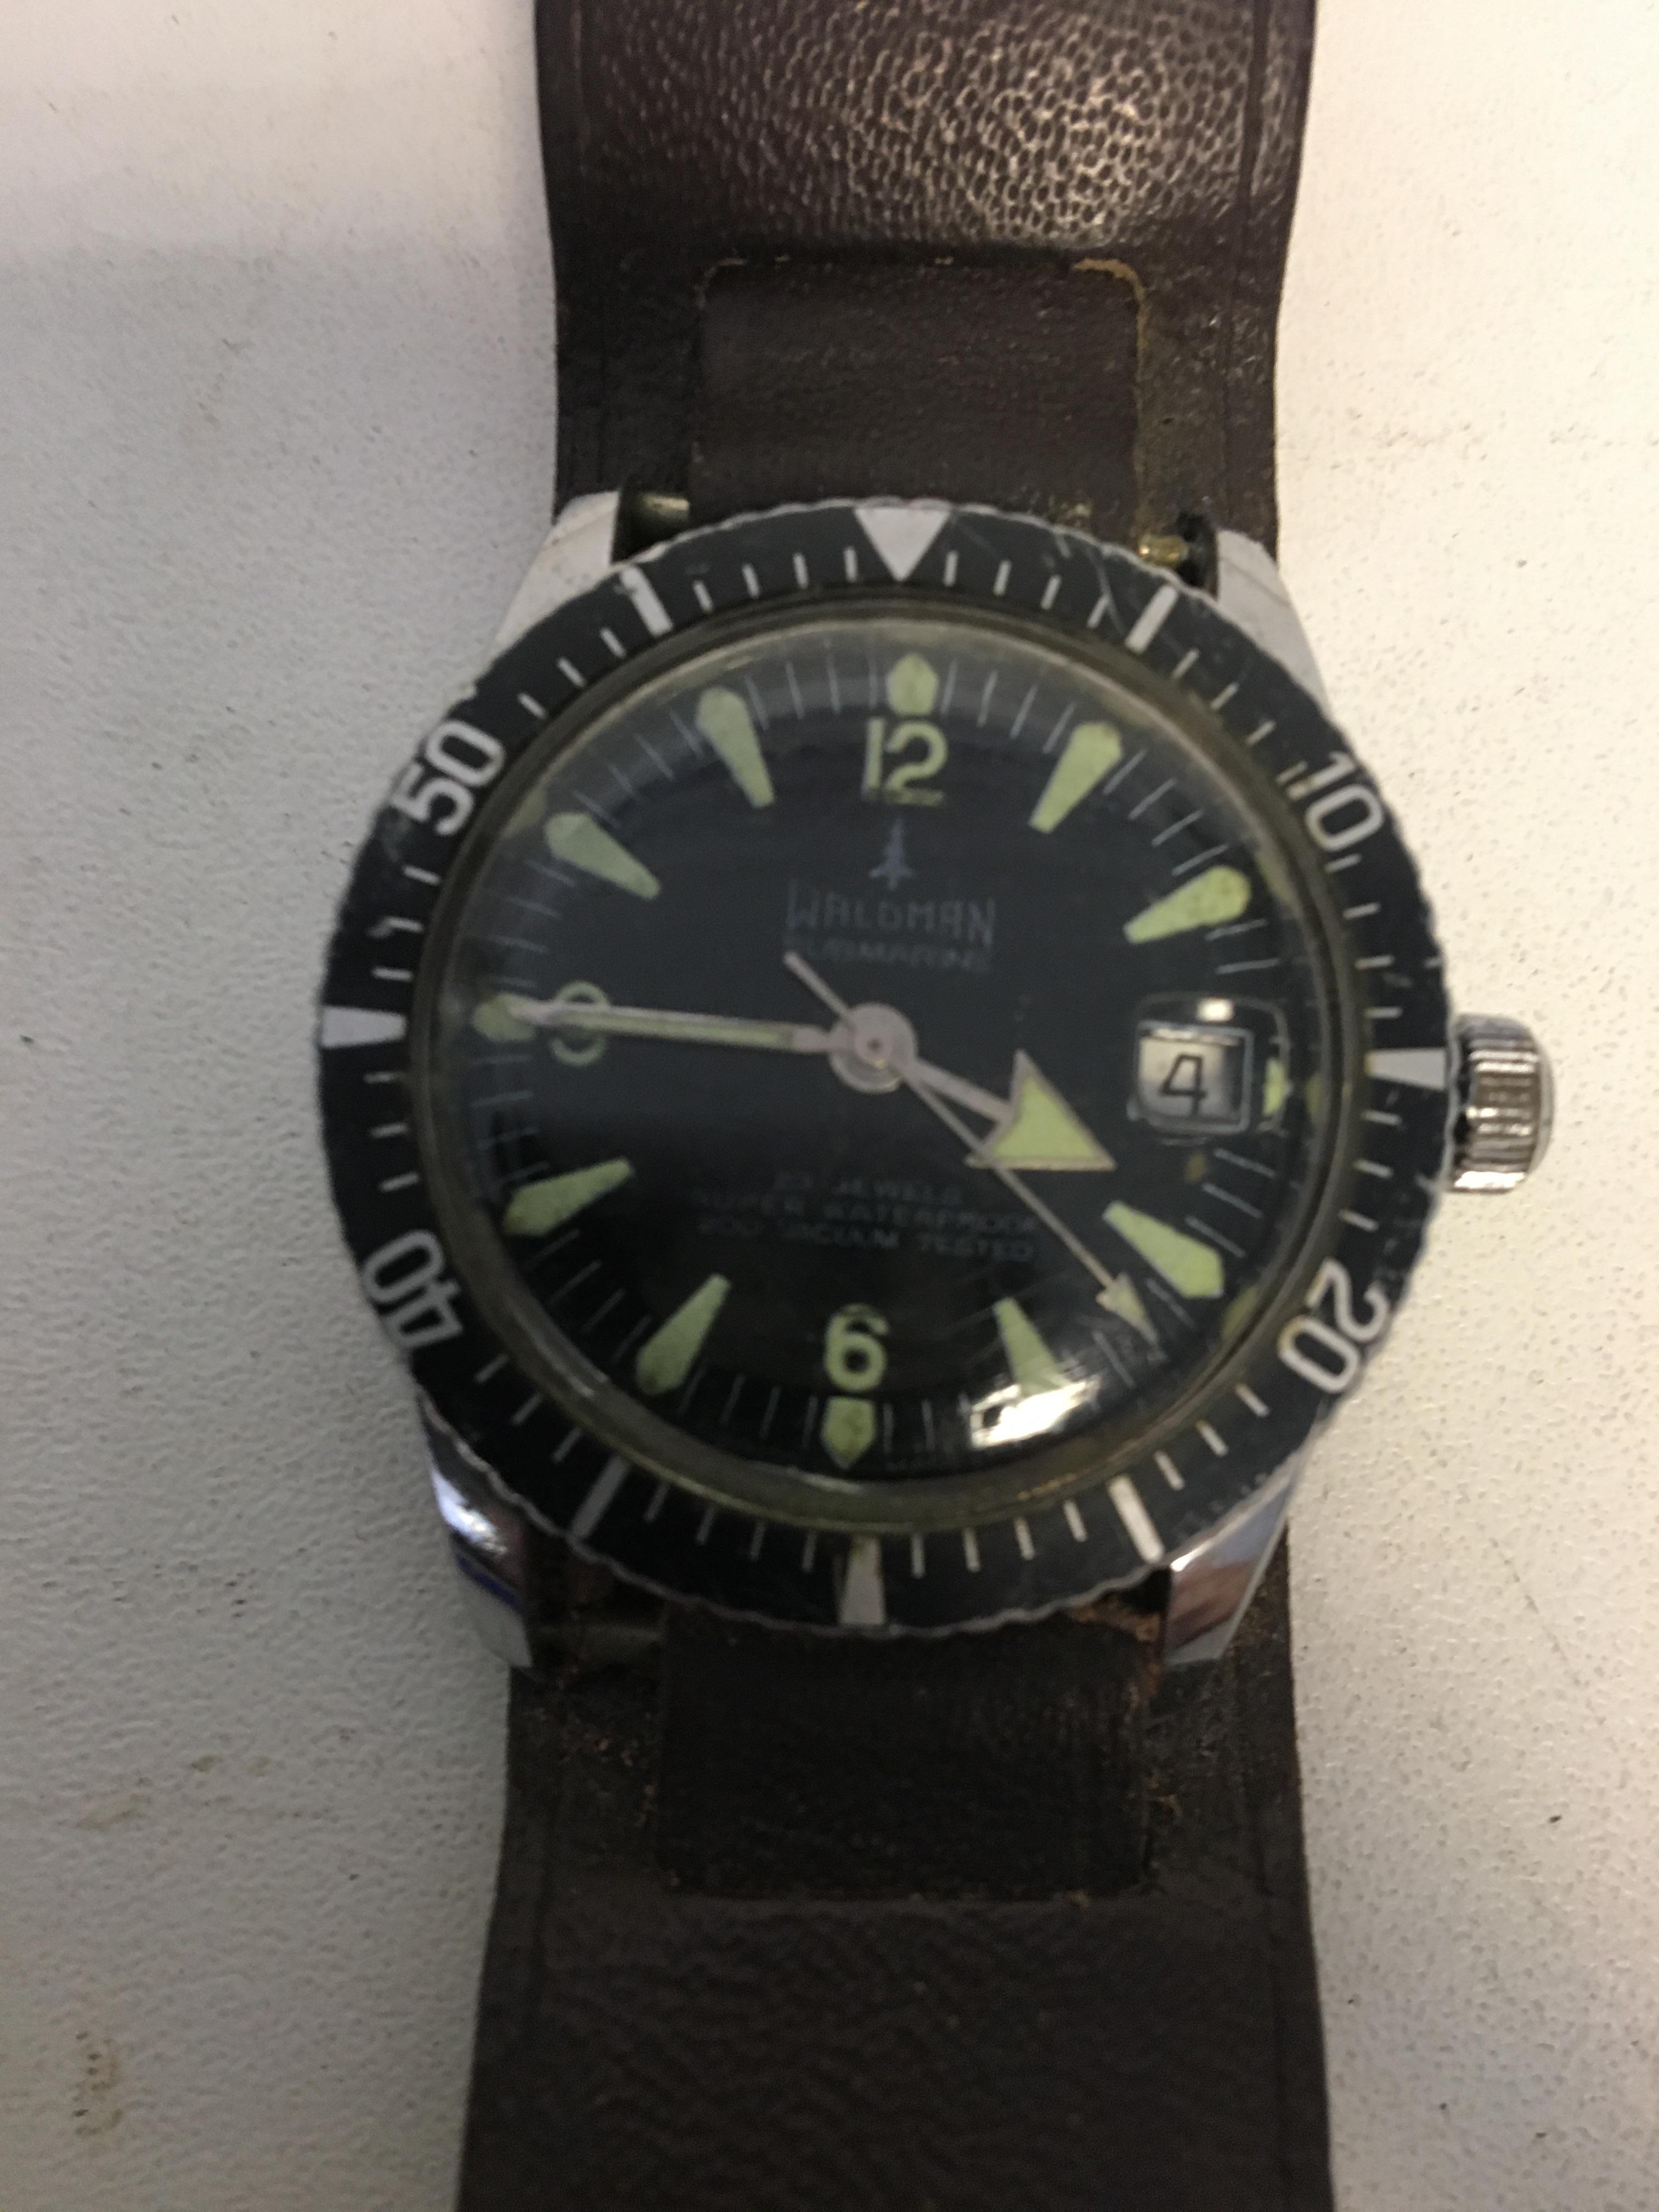 Vintage Submariner watch